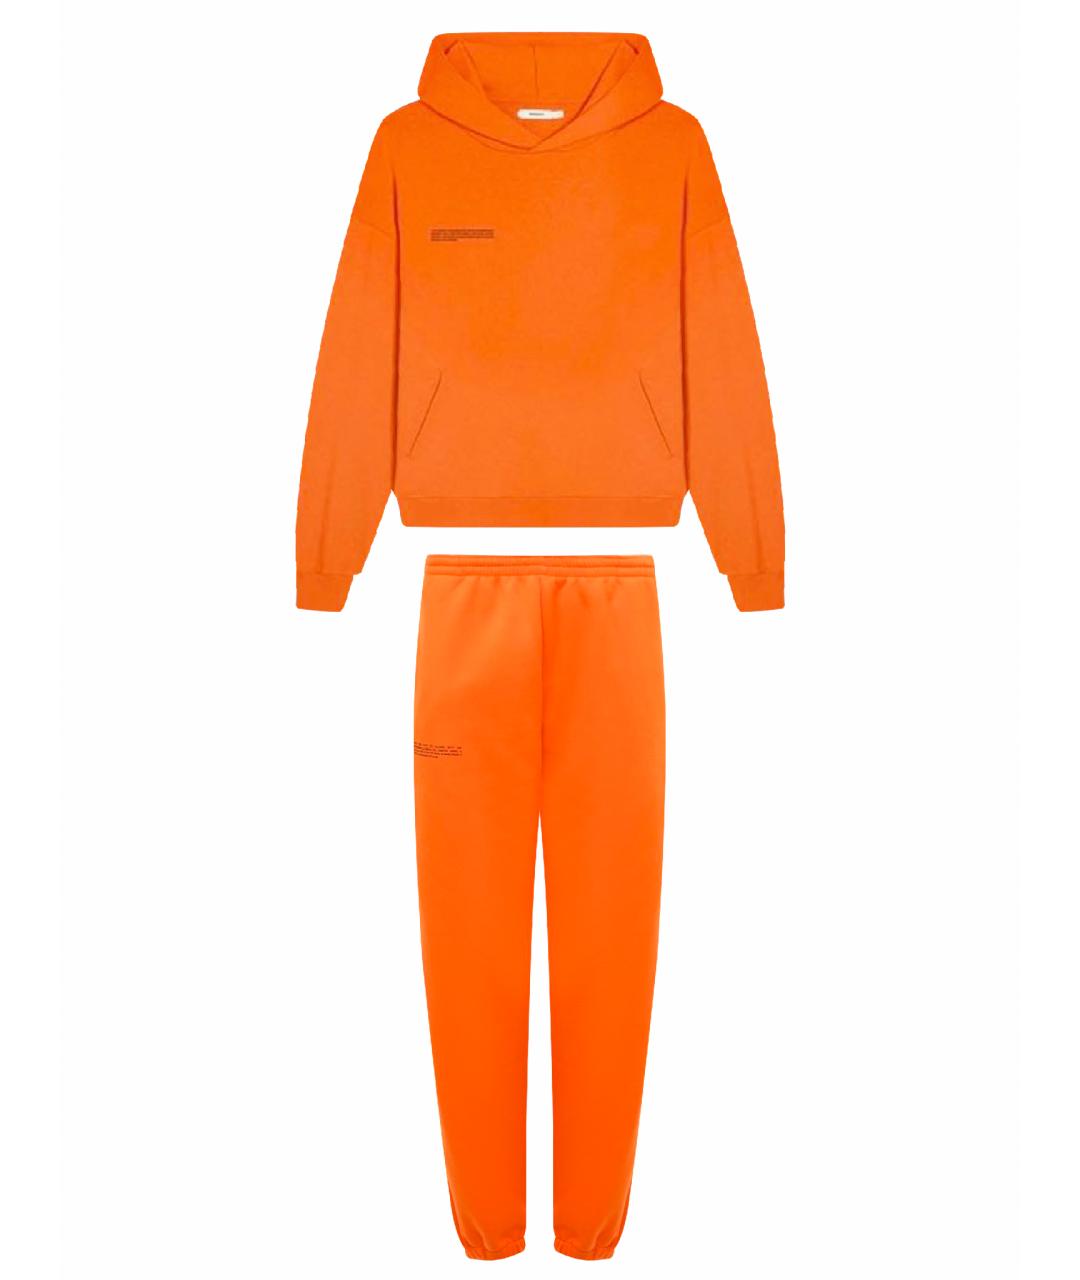 THE PANGAIA Оранжевый хлопковый спортивные костюмы, фото 1